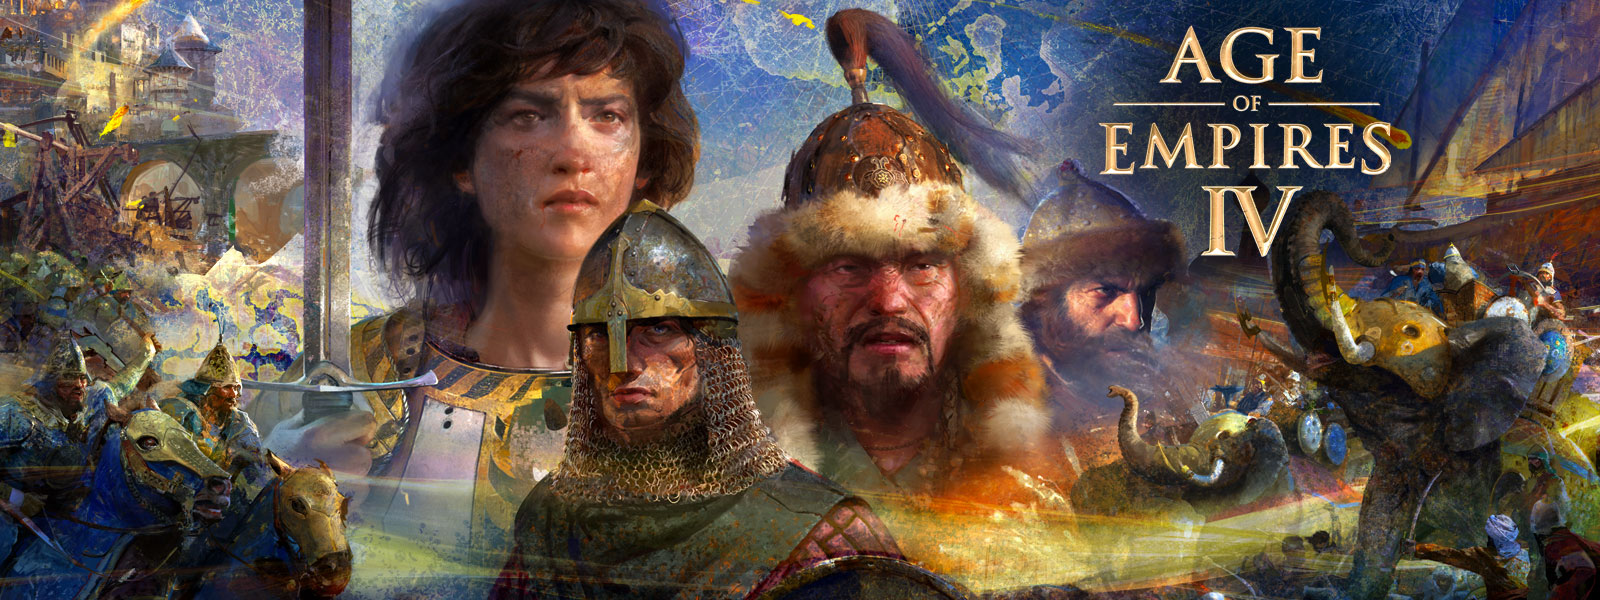 Age of Empires IV. Quatre personnages avec des scènes de guerre, des éléphants et des hommes avec des chevaux autour d’eux sur une carte en arrière-plan